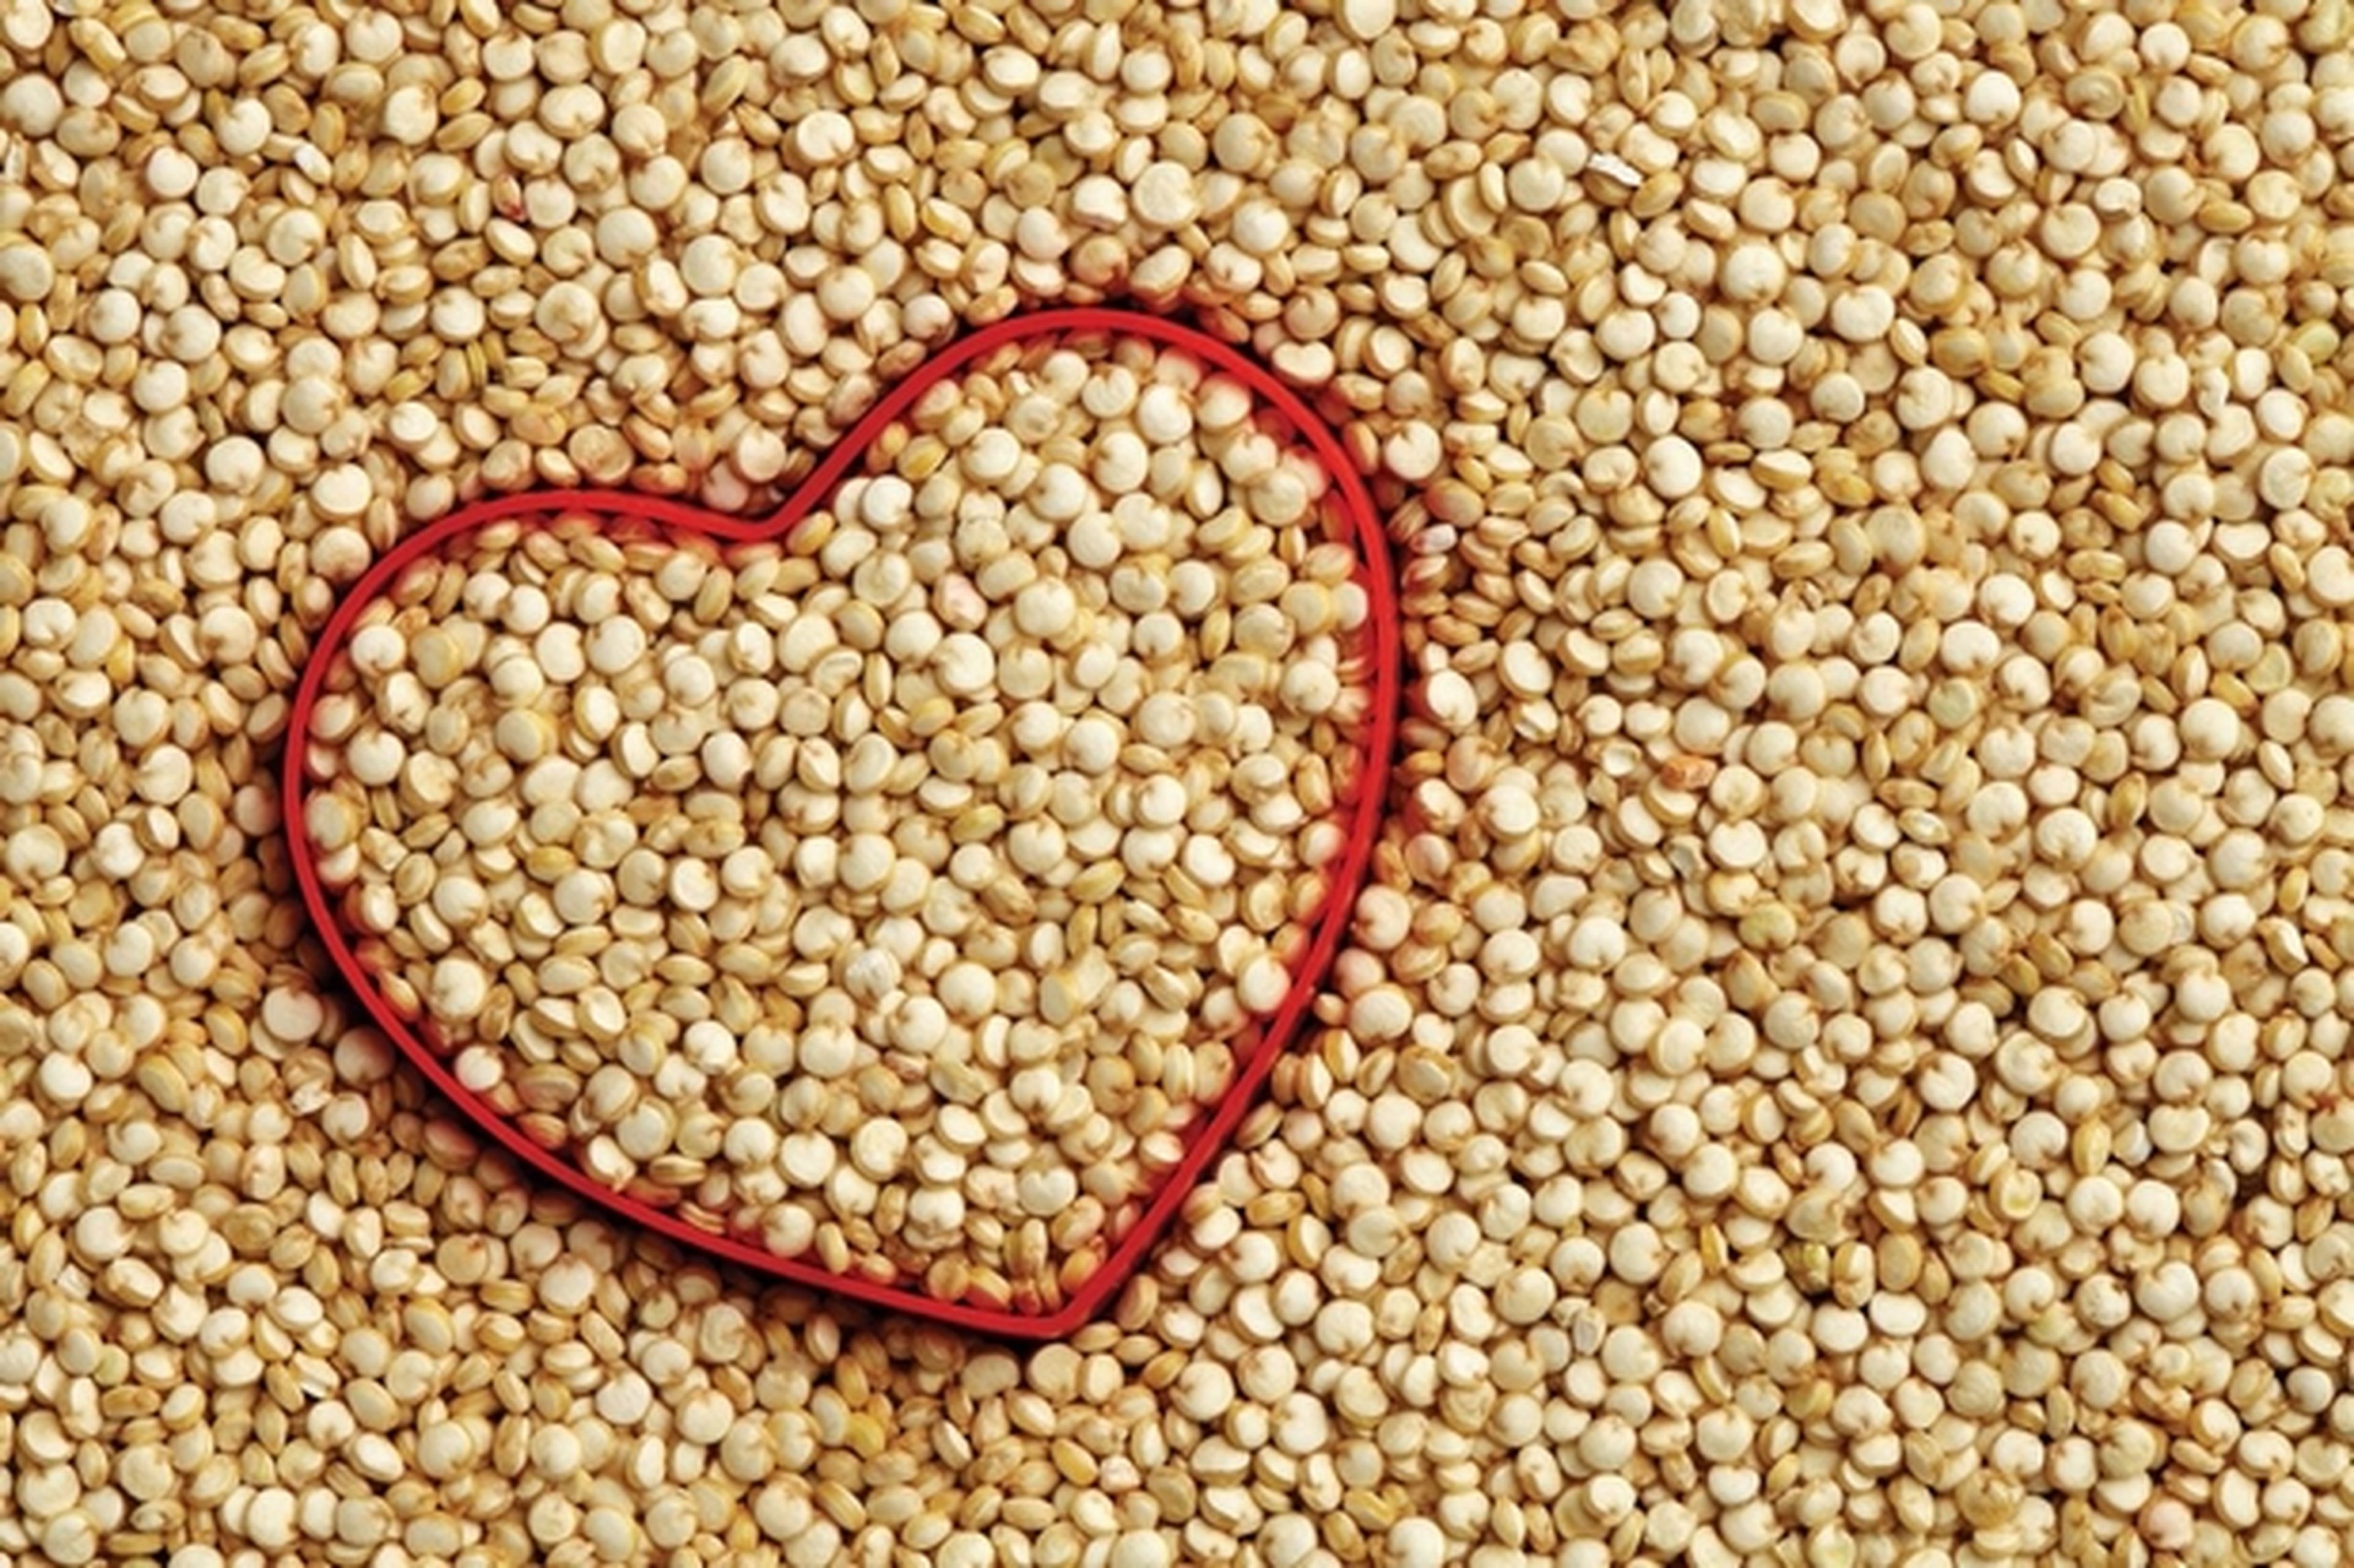 Quinoa: propiedades, beneficios y mejores recetas caseras